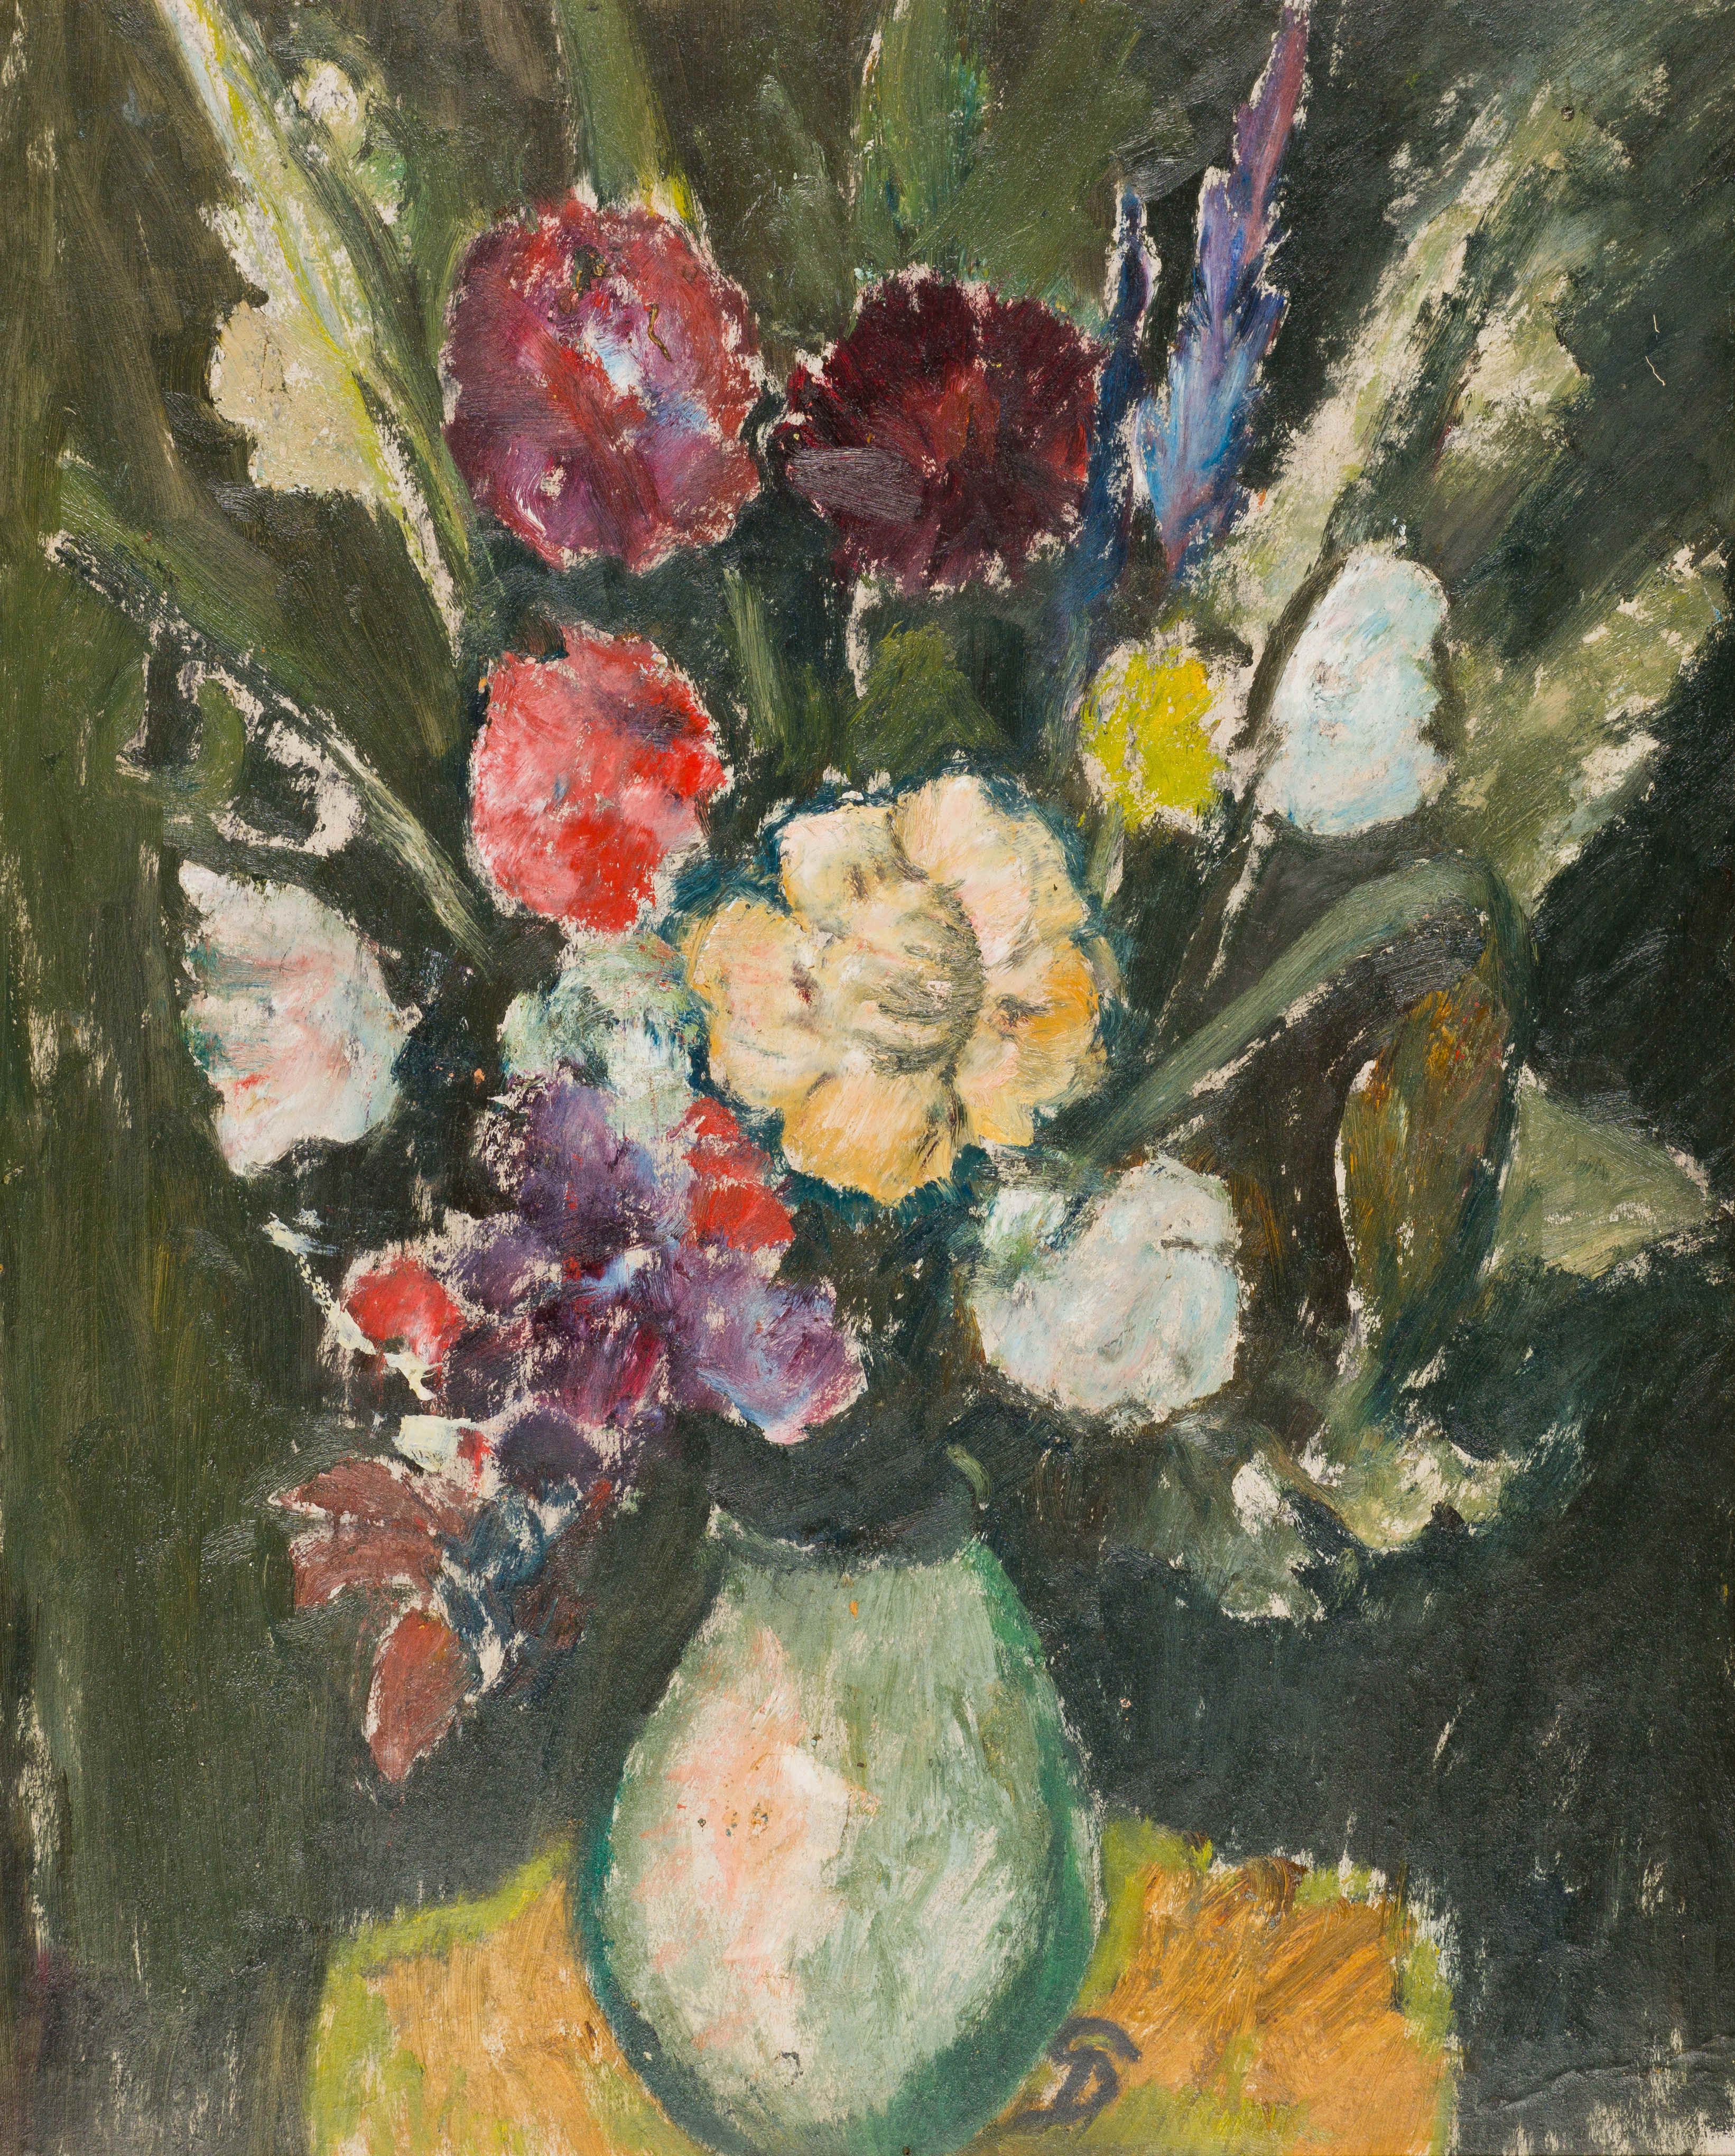 Pranas Domsaitis; Vase of Flowers